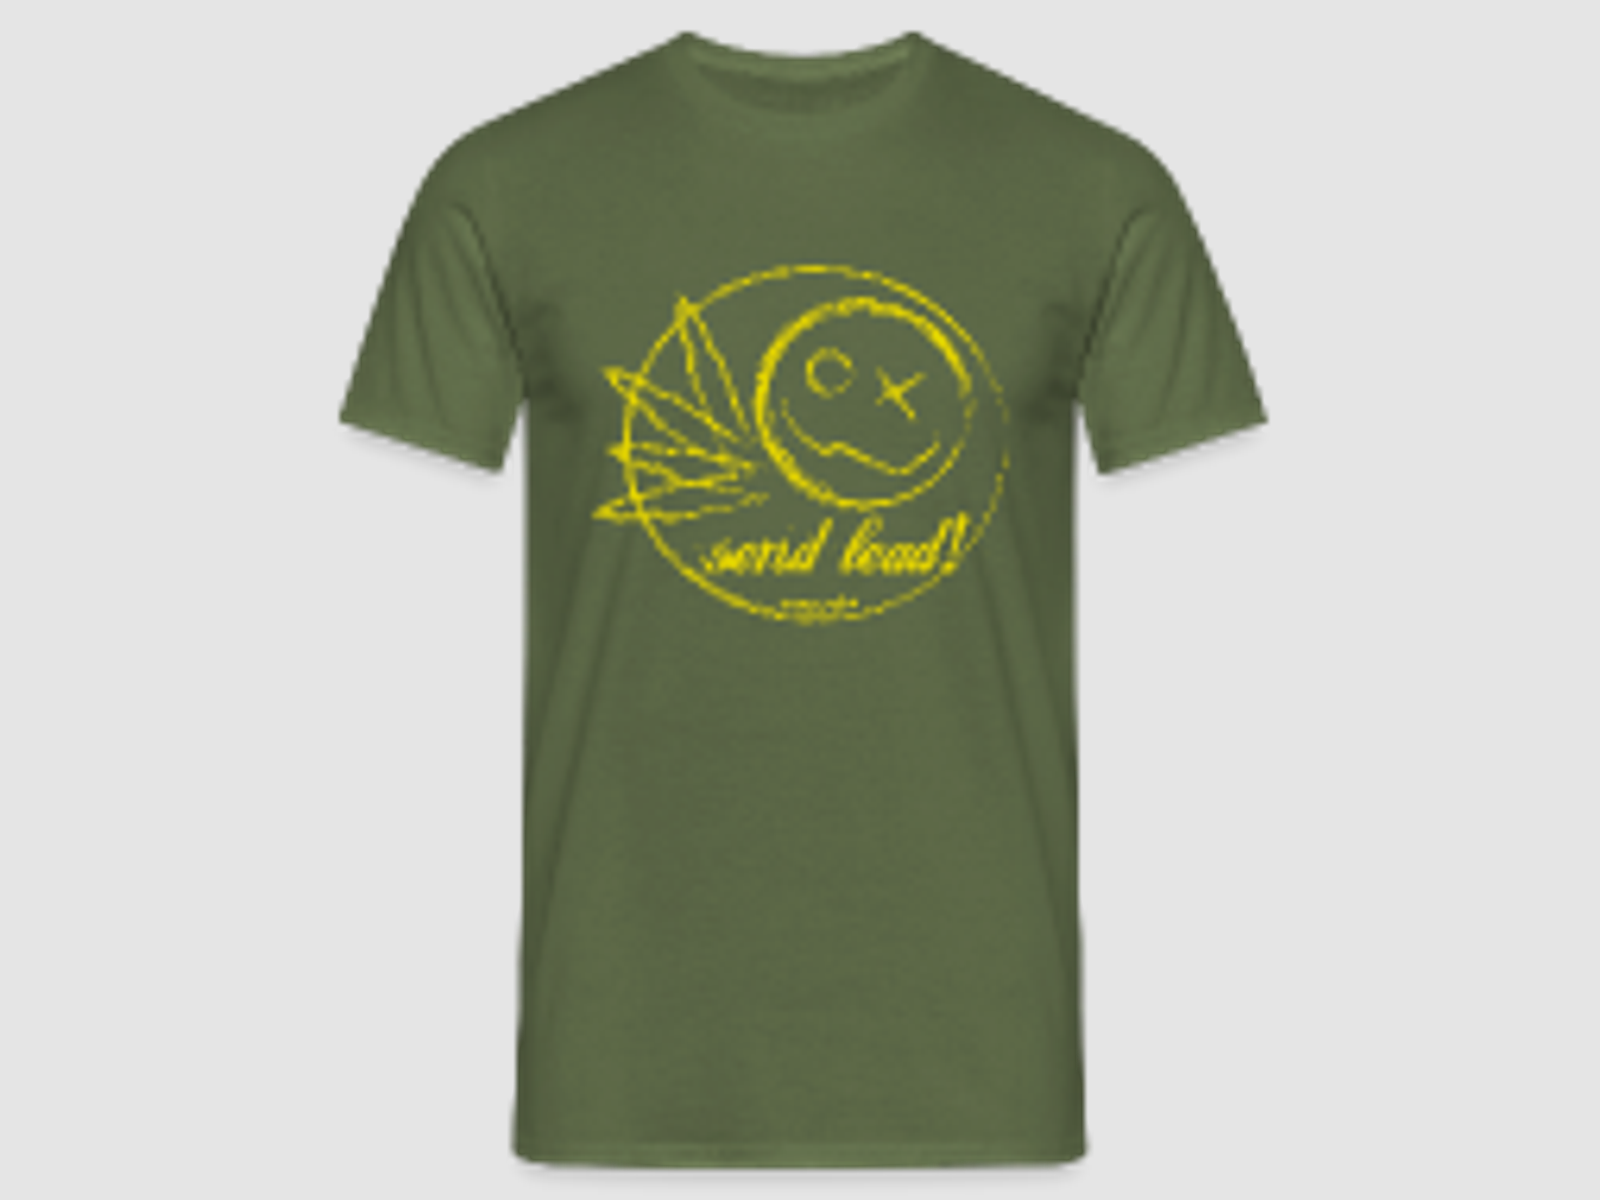 send lead - Männer T-Shirt Militärgrün